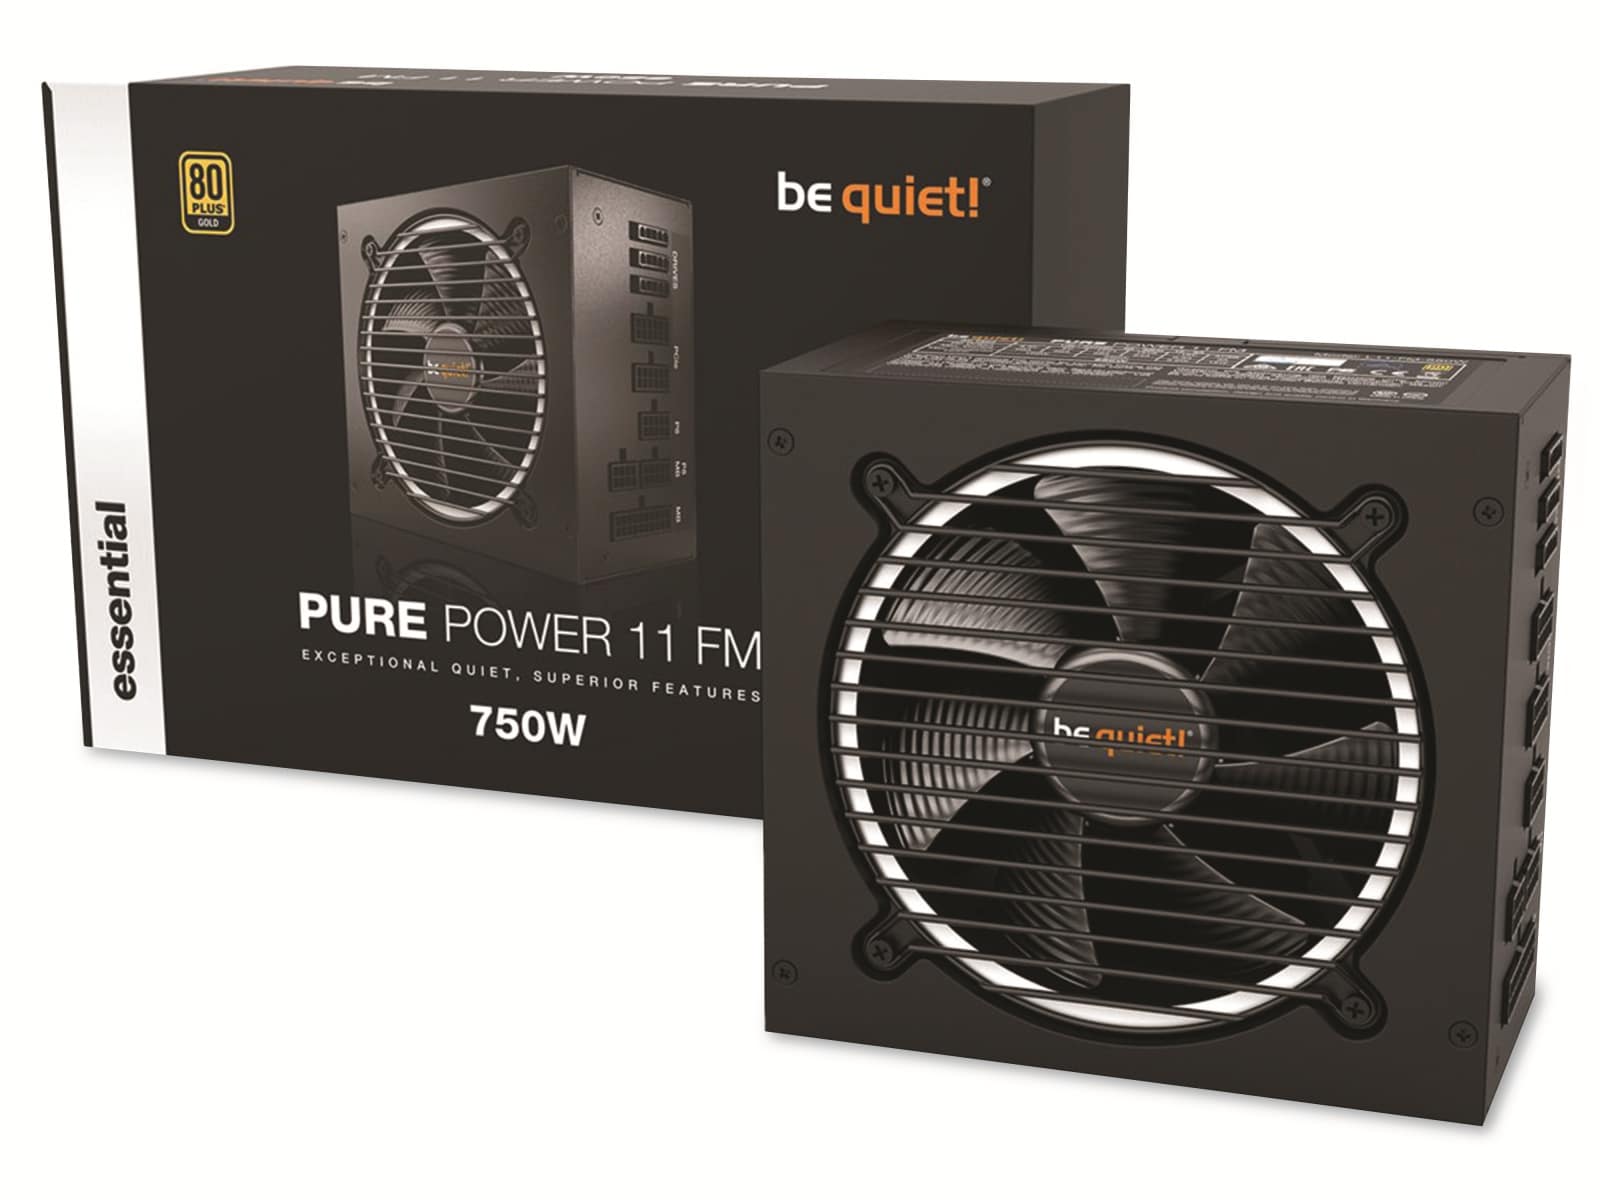  BE QUIET! PC-Netzteil Pure Power 11 FM, 750W, 80+ Gold, Kabelmanagement